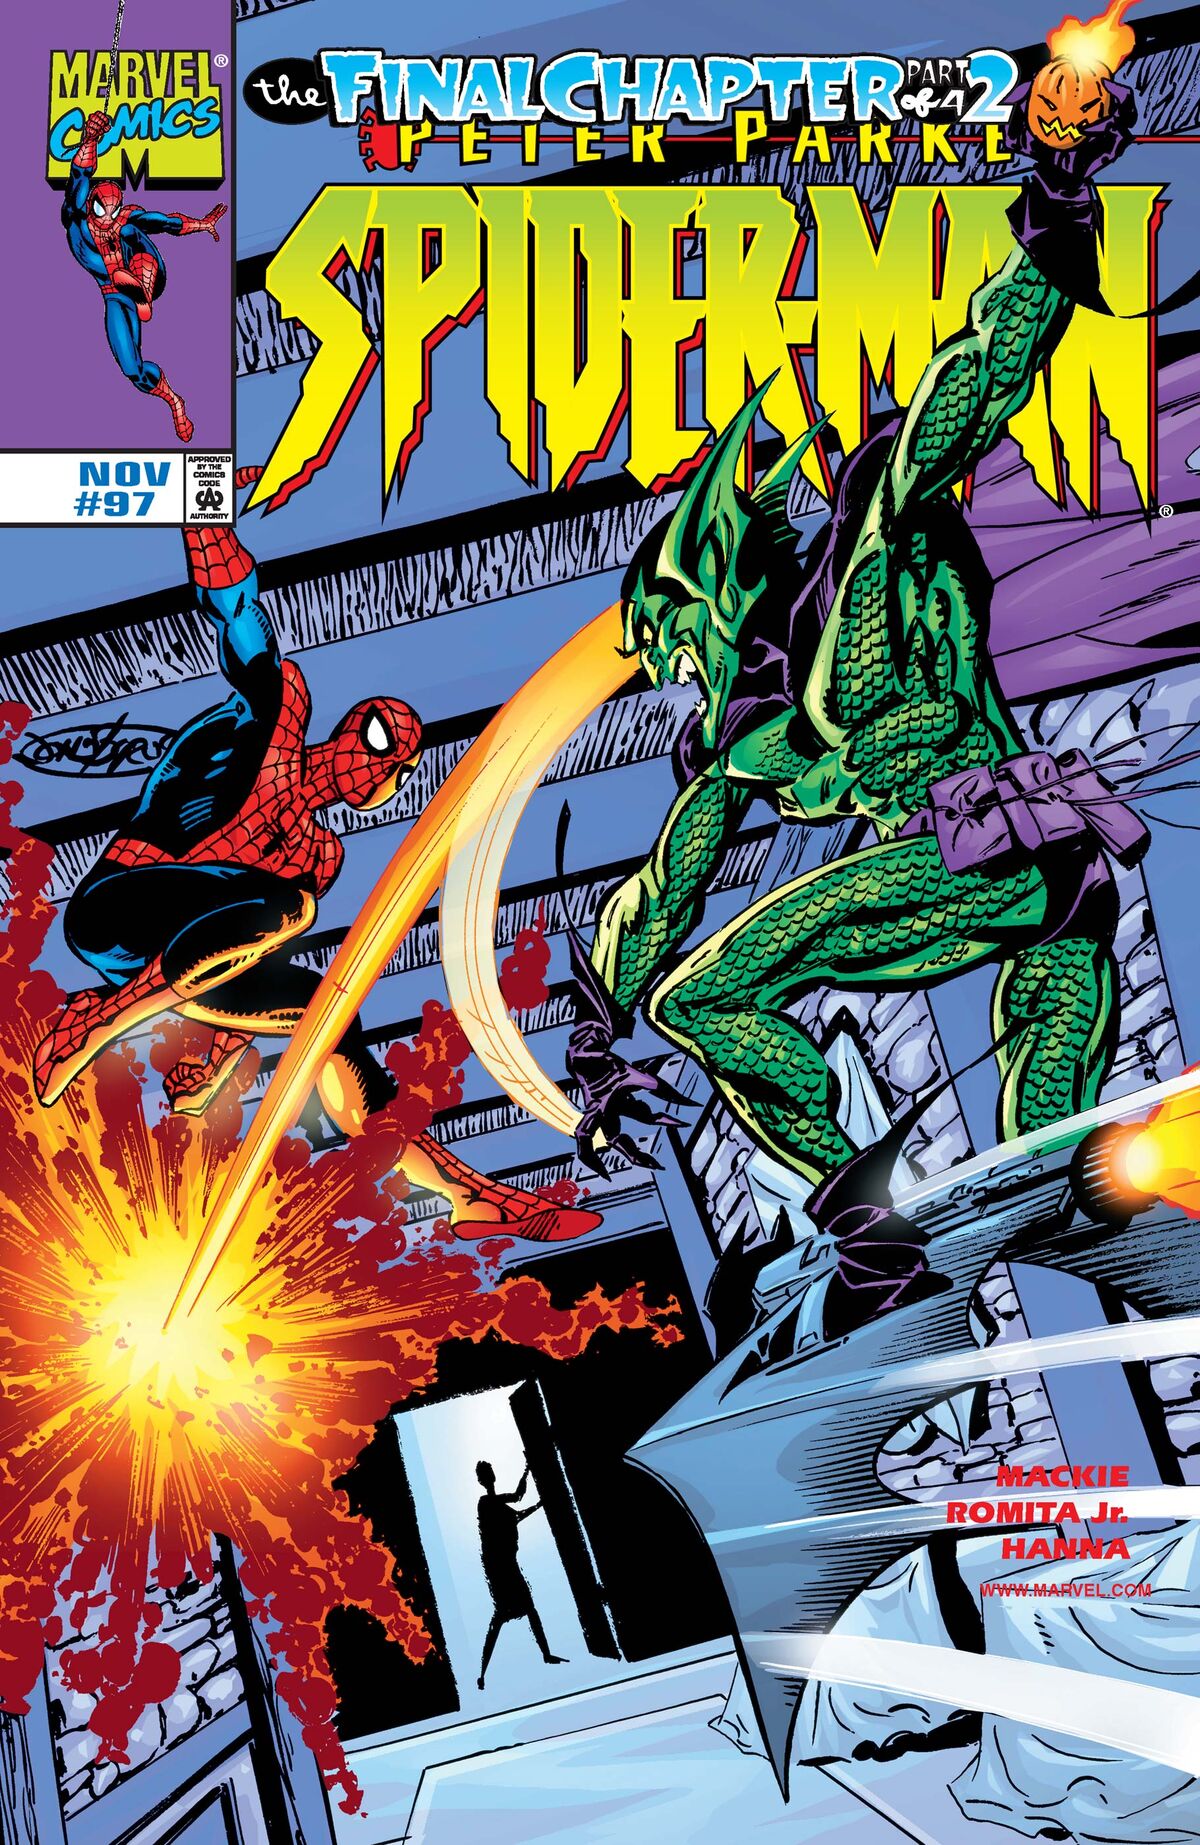 Spider-Man Vol 1 97 | Marvel Database | Fandom